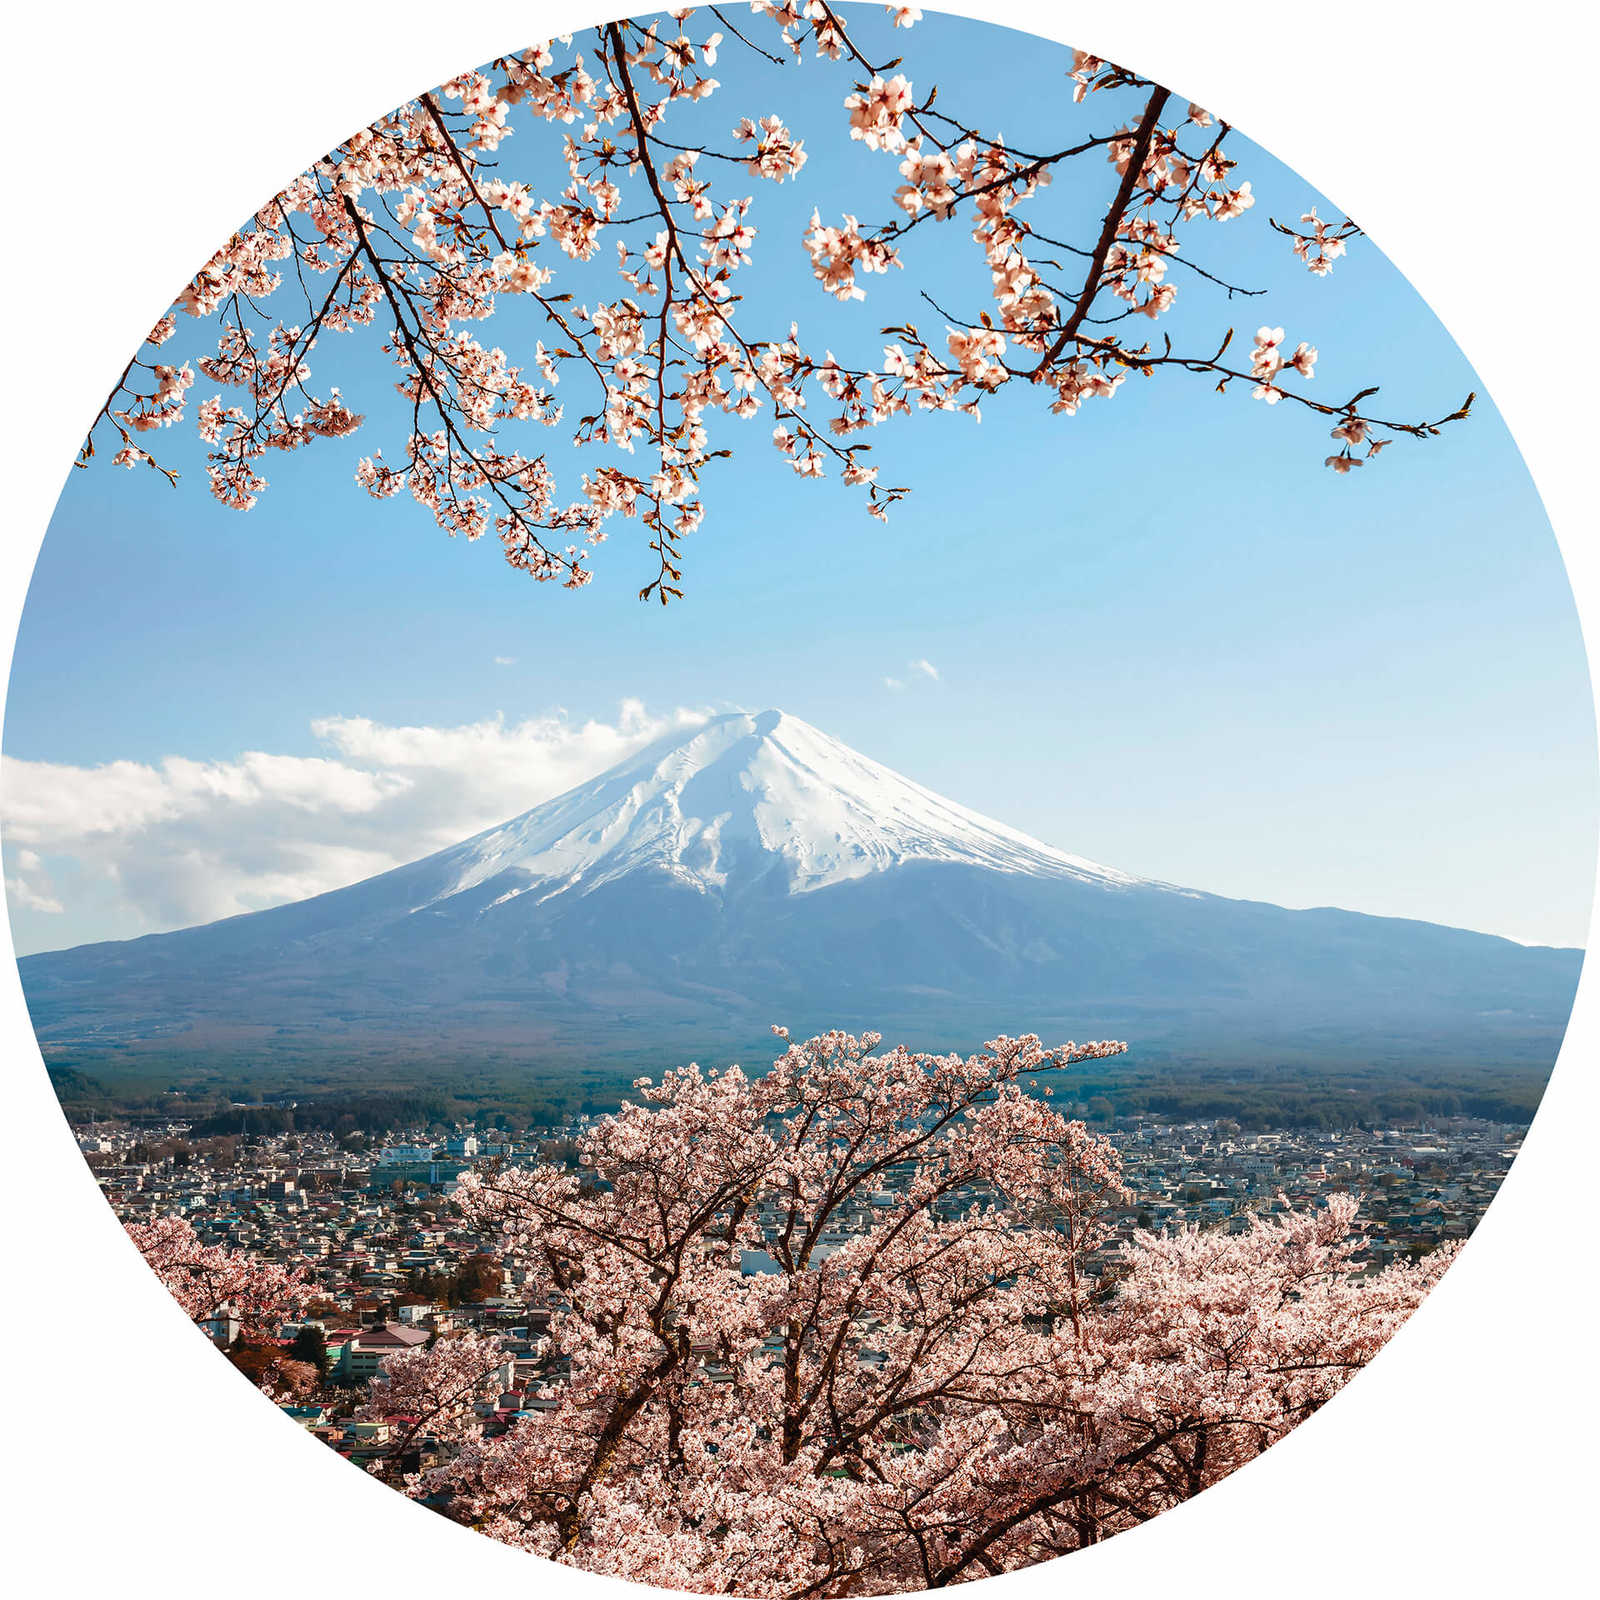         photo wallpaper around Mount Fuji in Japan
    